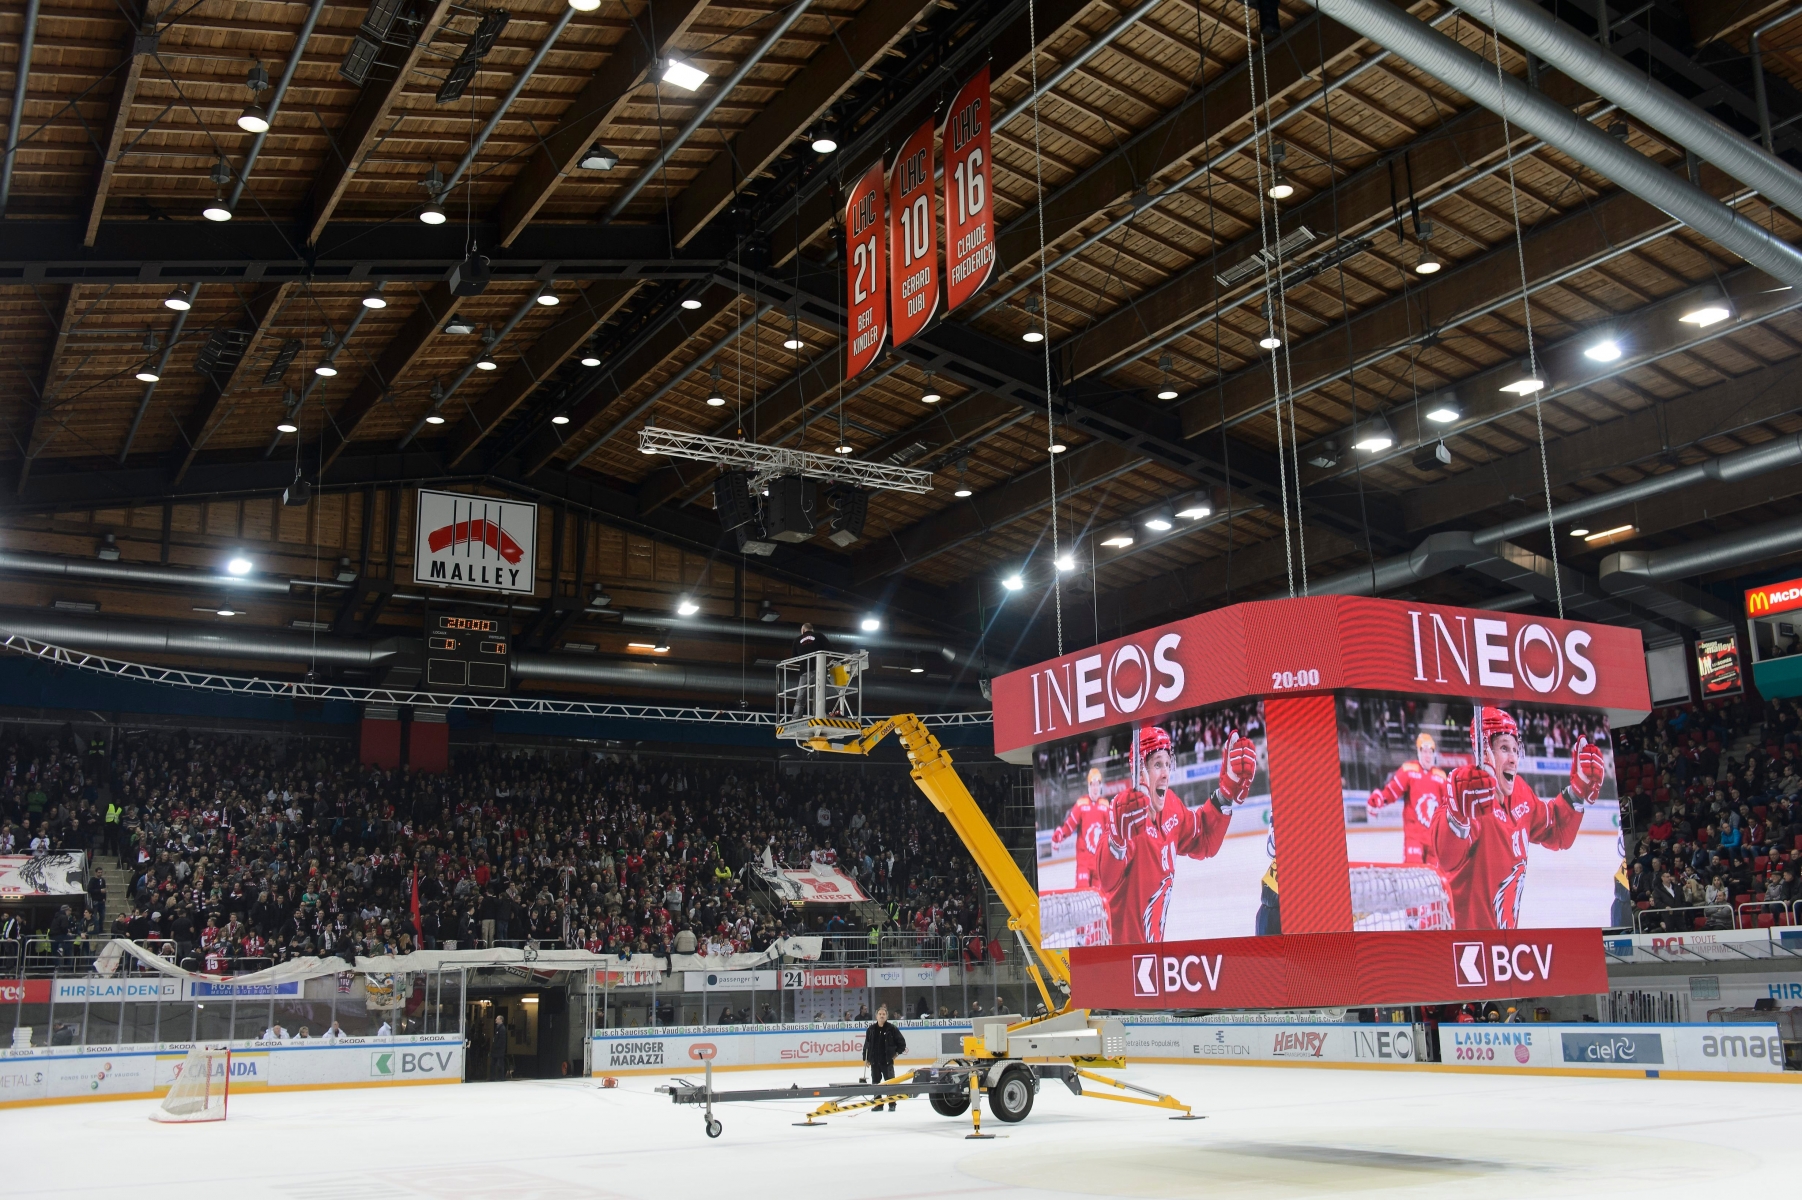 Le derby lemanique sera retarde a cause de l'ecran geant lumineux, lors du match du championnat suisse de hockey sur glace de National League A, entre le Lausanne Hockey Club, LHC, et le Geneve-Servette HC, ce vendredi 23 octobre 2015 a la patinoire de Malley a Lausanne. (KEYSTONE/Jean-Christophe Bott) SCHWEIZ EISHOCKEY LAUSANNE SERVETTE